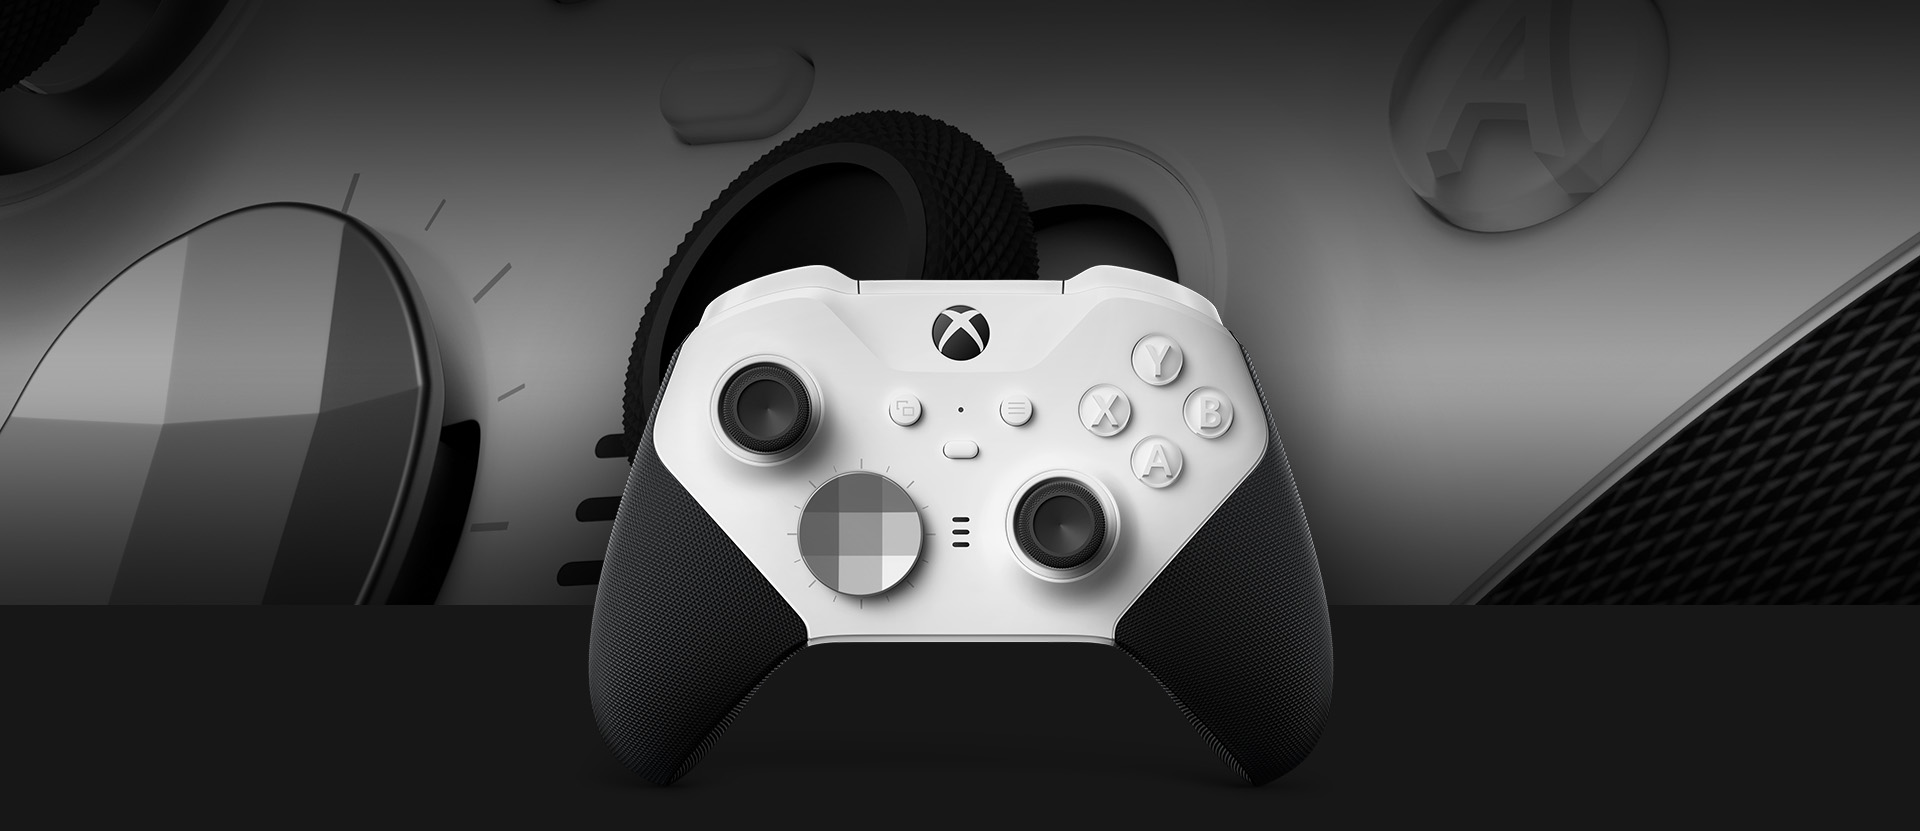 Čelní pohled na bezdrátový ovladač Xbox Elite Series 2 – Core s detailním záběrem na ovladač v pozadí.